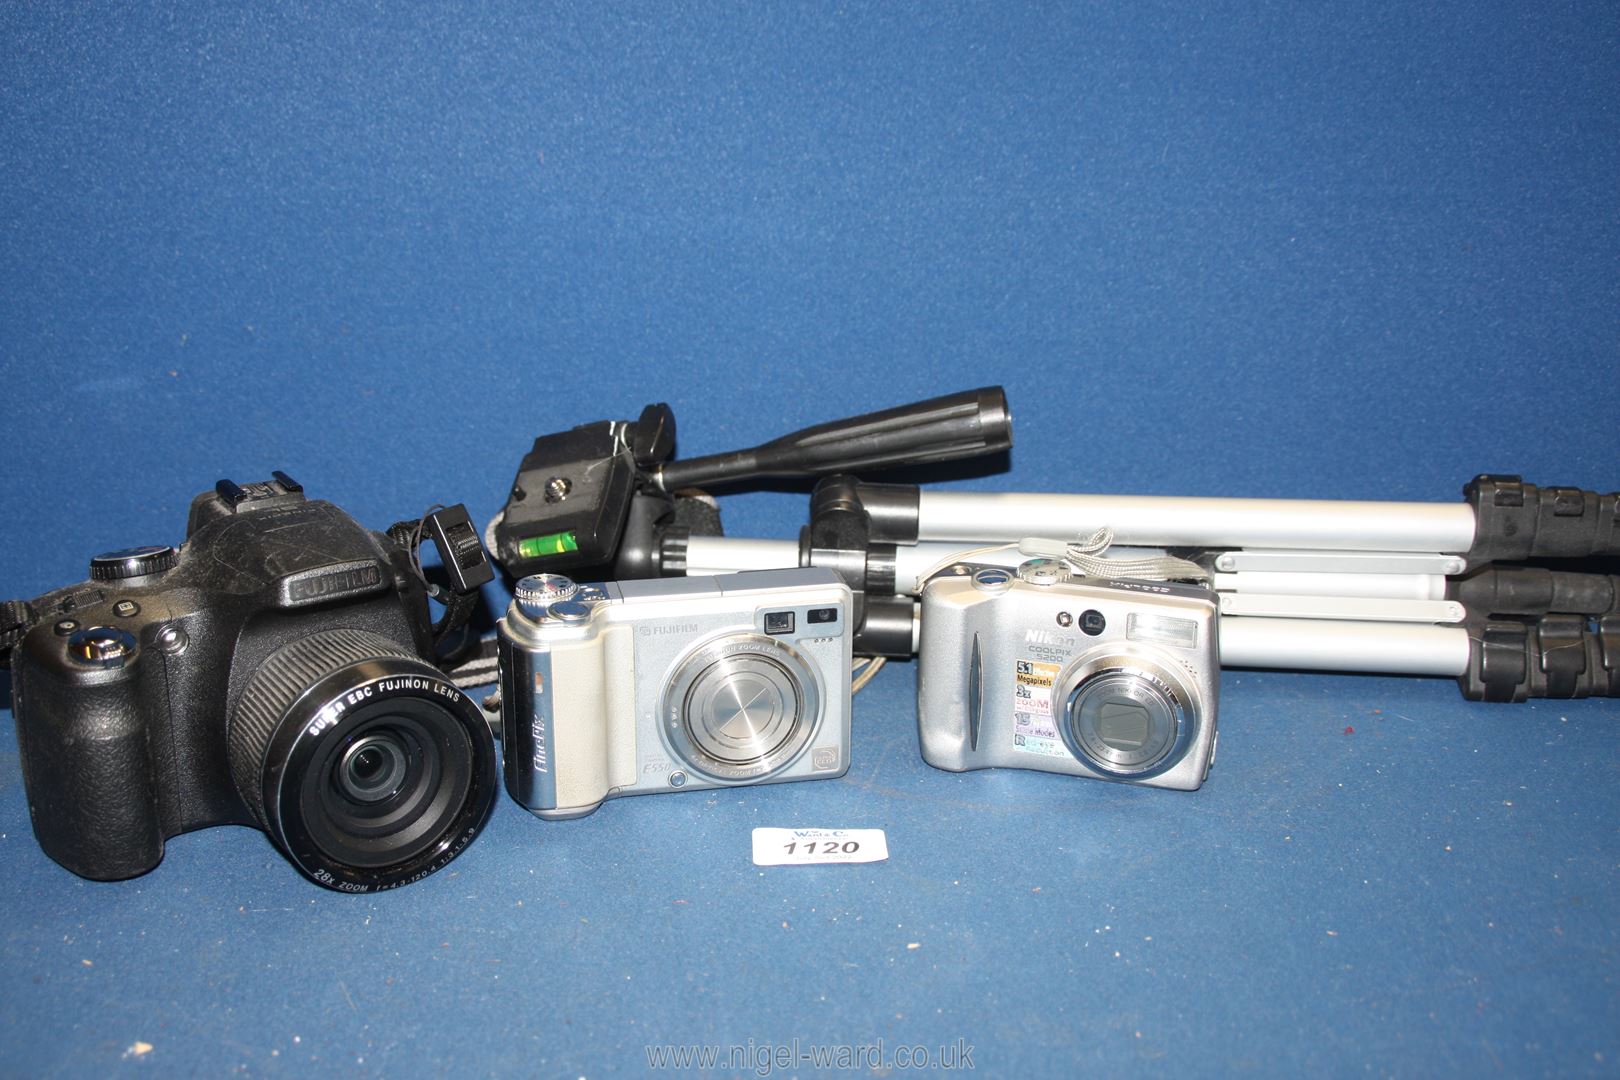 A quantity of miscellaneous cameras including a boxed Fujifilm SL280 14 mega pixel digital camera, - Image 2 of 2